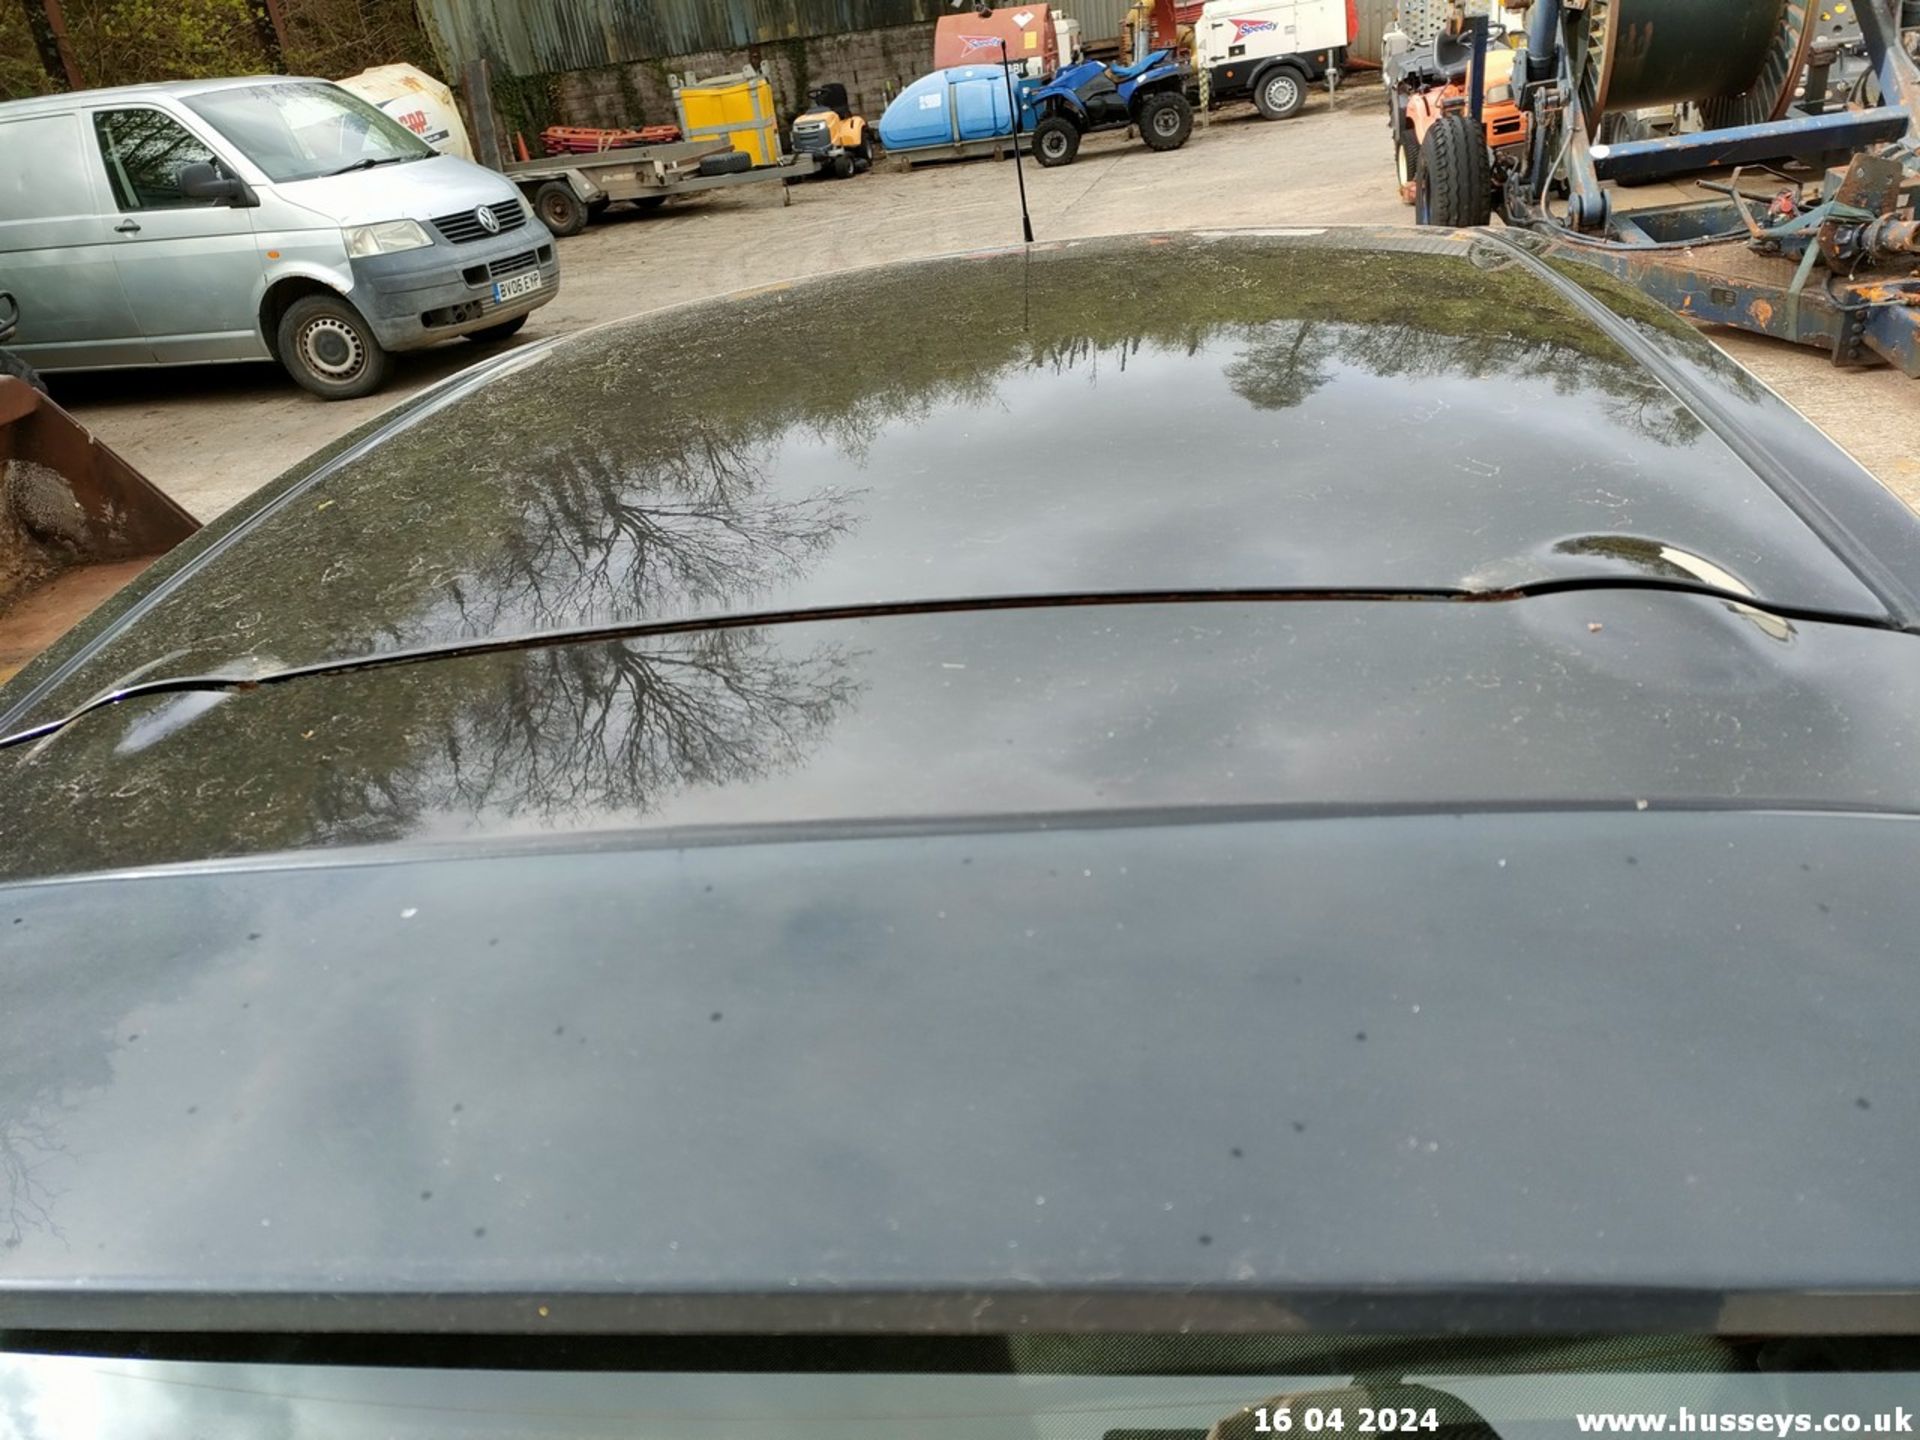 03/53 NISSAN MICRA SX - 1240cc 5dr Hatchback (Black, 75k) - Image 41 of 69